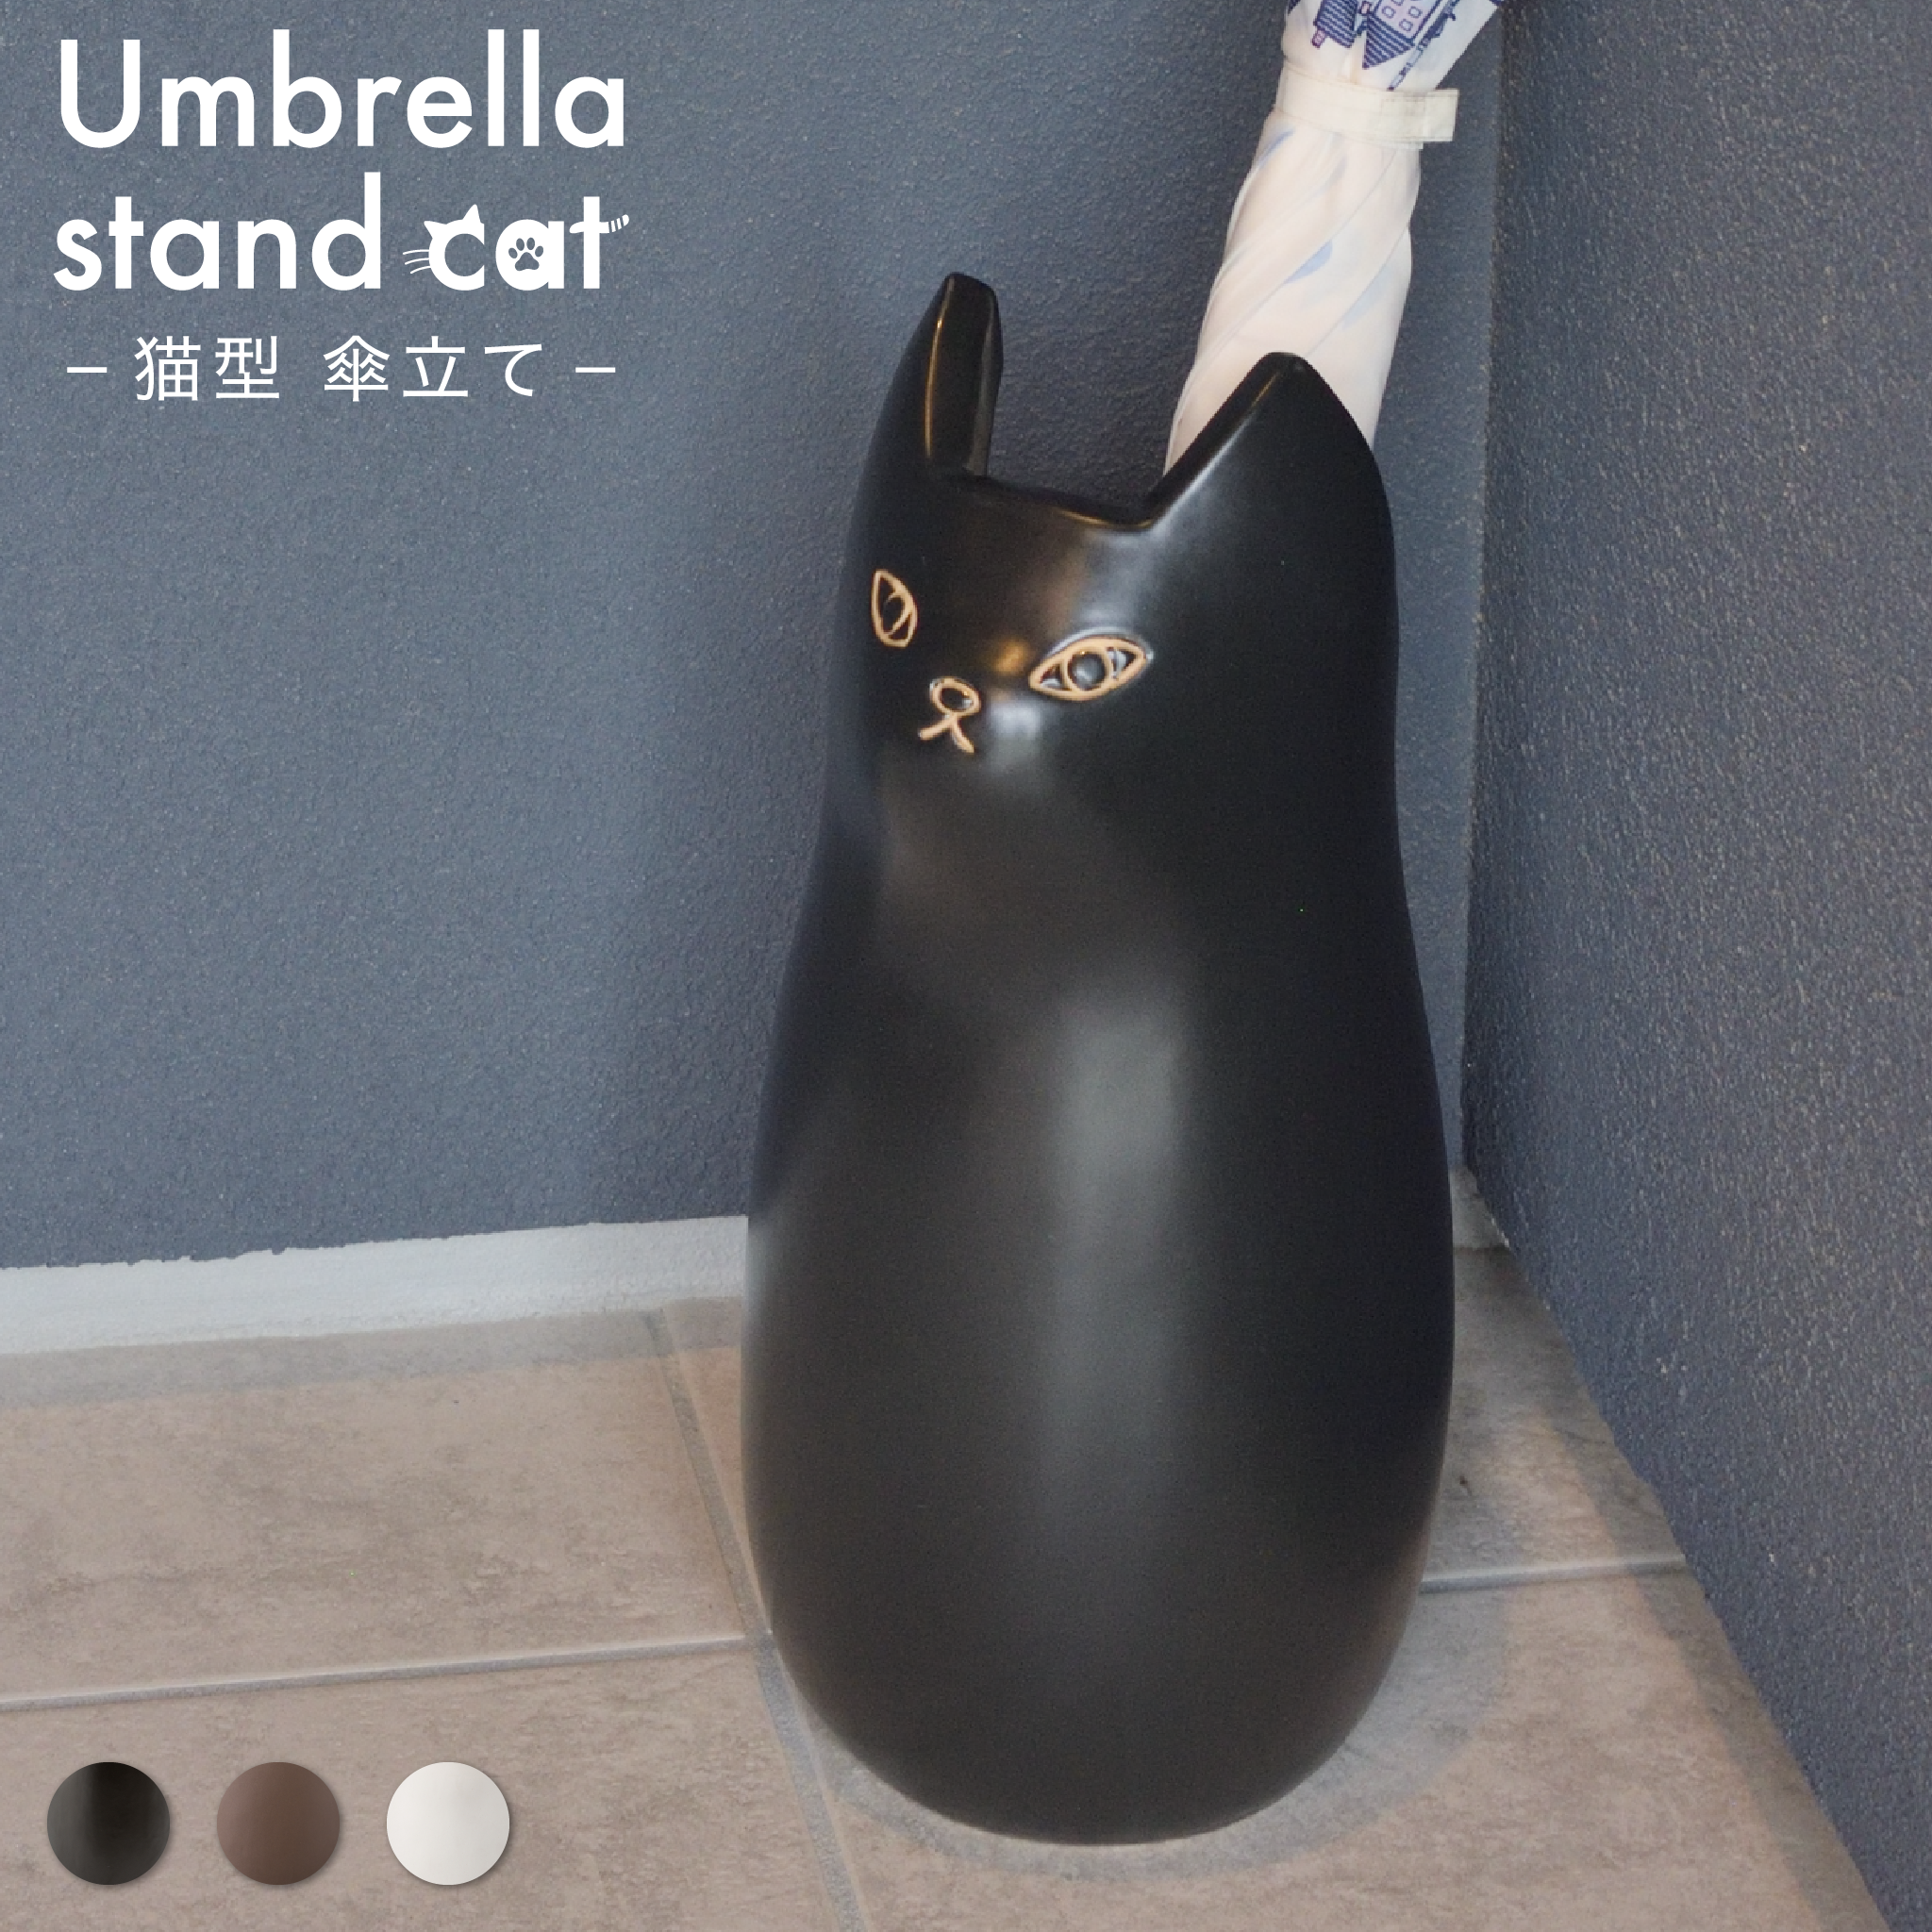 傘立て 猫 ブラック ネコ型傘立て - 傘立て